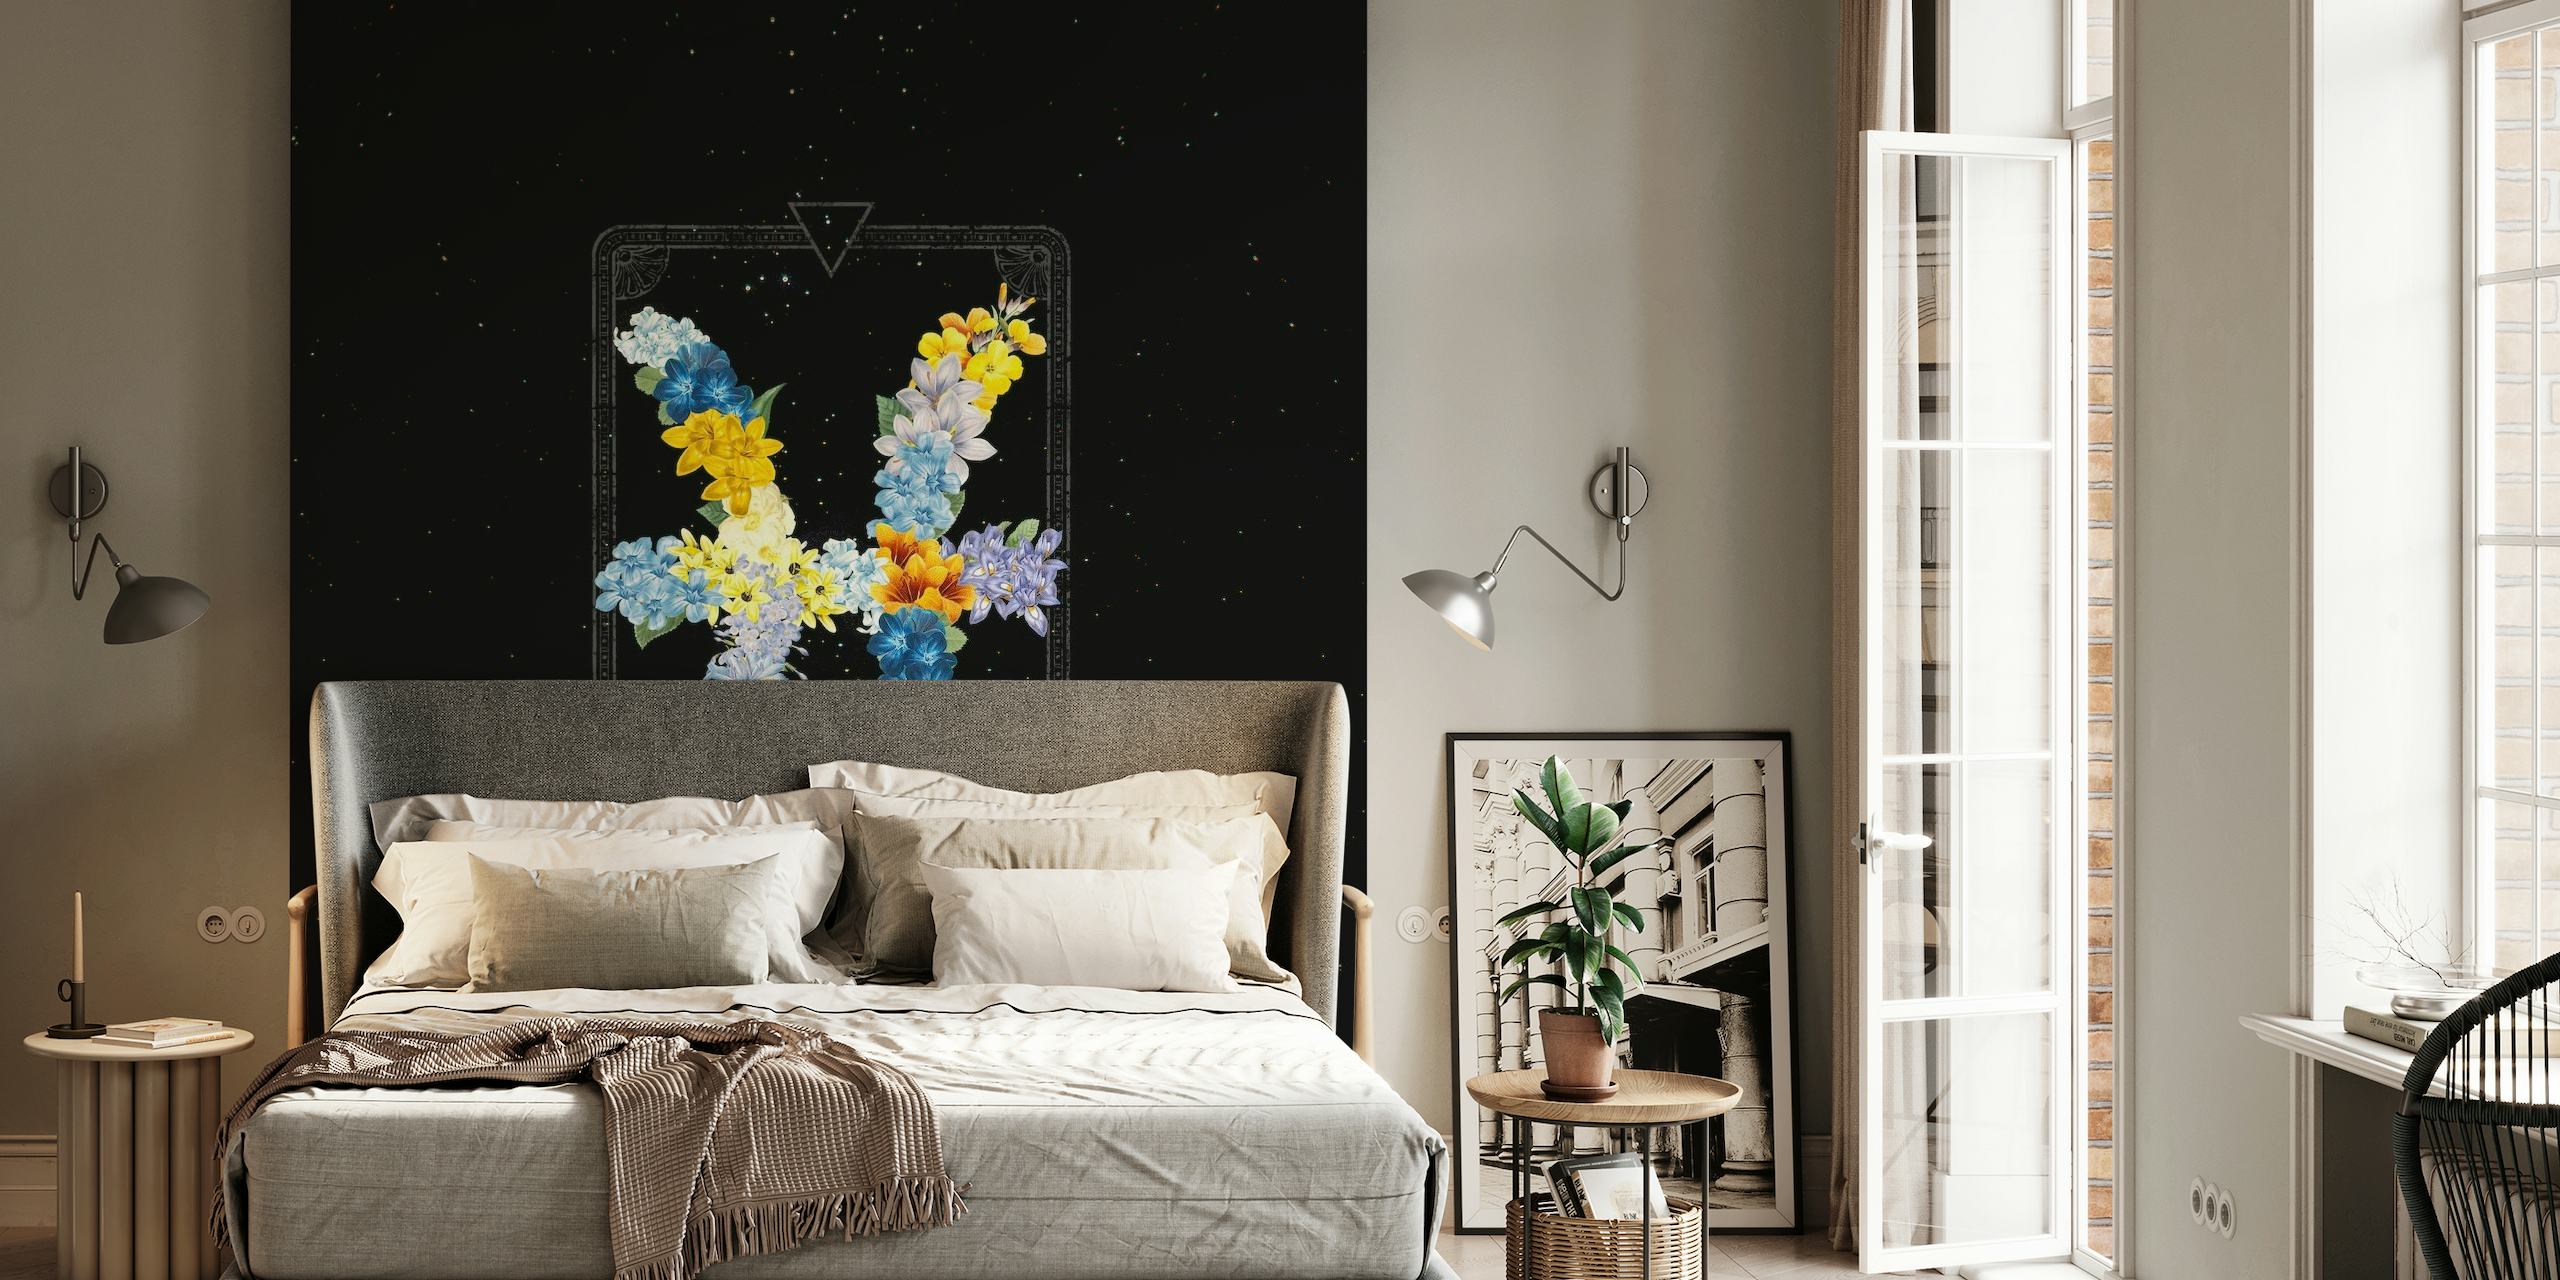 Fotomural vinílico de parede com padrão floral do signo do zodíaco de Peixes contra um cenário de noite estrelada